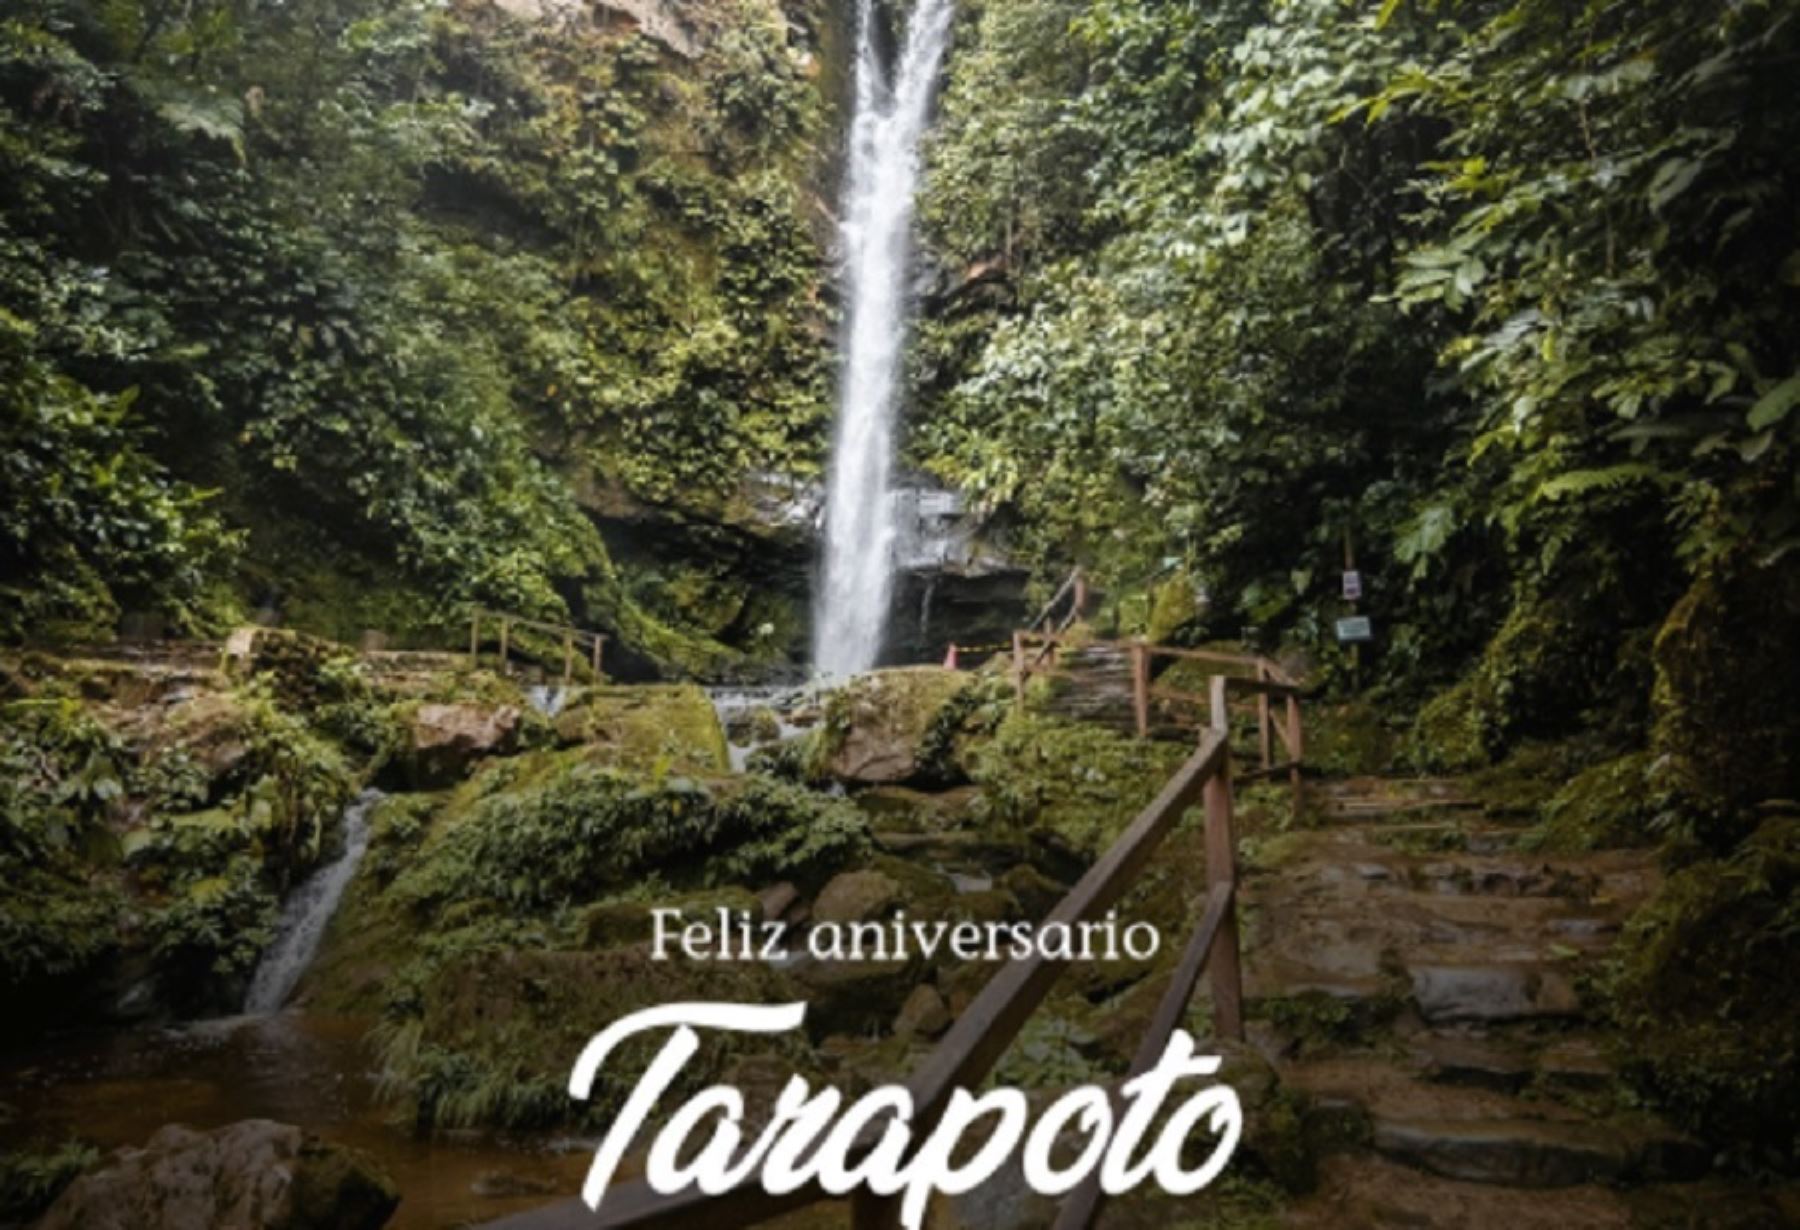 La ciudad de Tarapoto celebra hoy su 239 aniversario de fundación española. La paradisiaca catarata de Aguashiyacu es uno de sus principales atractivos turísticos y es un destino bioseguro al contar con el sello internacional Safe Travels.